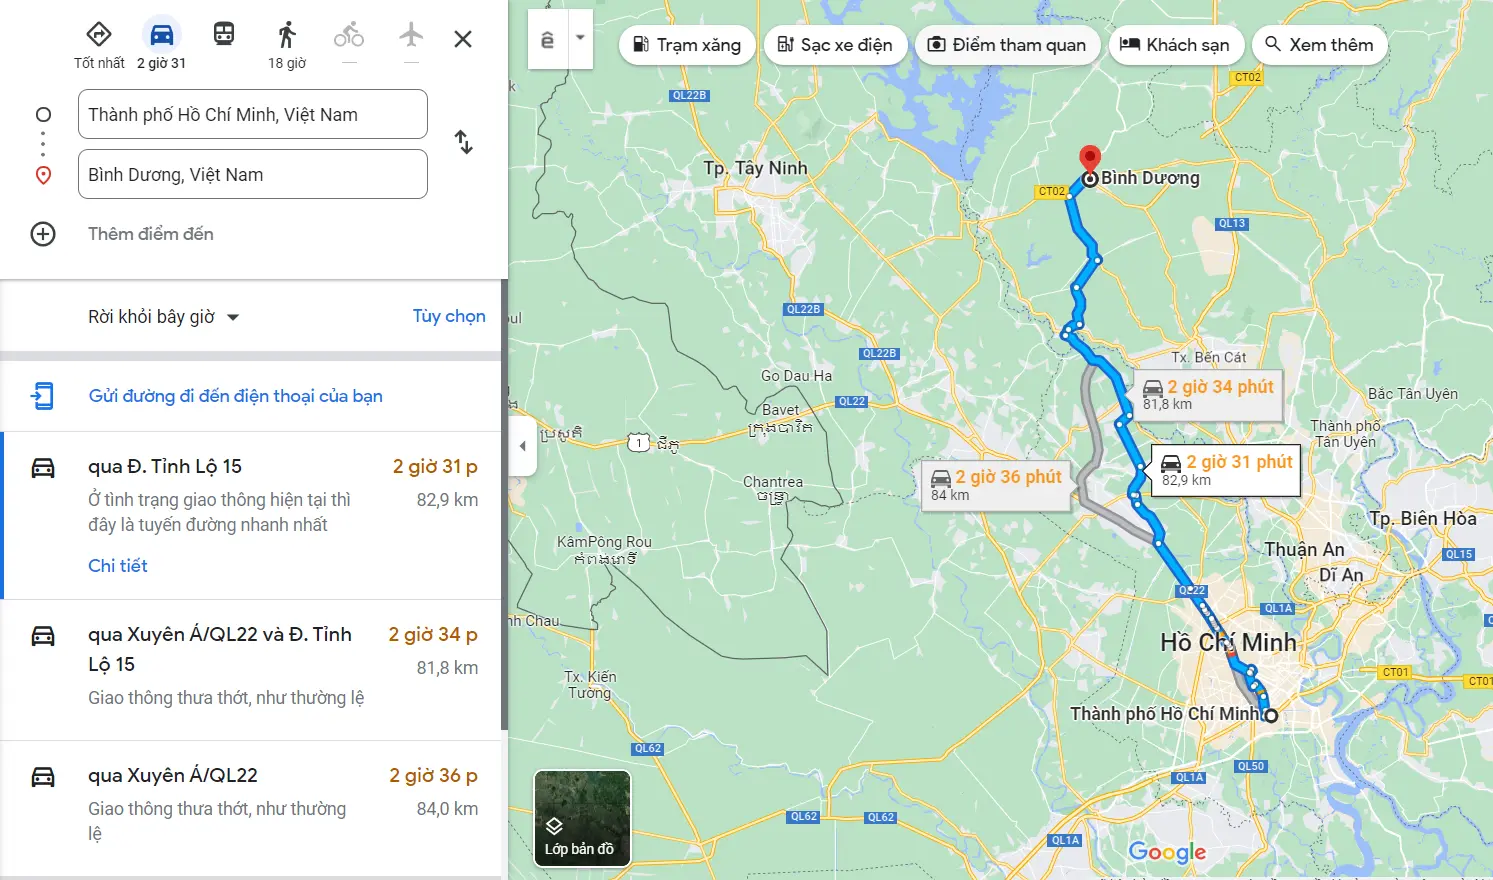 Khoảng cách từ Sài Gòn đến Bình Dương theo dữ liệu Google Maps là 82,9km